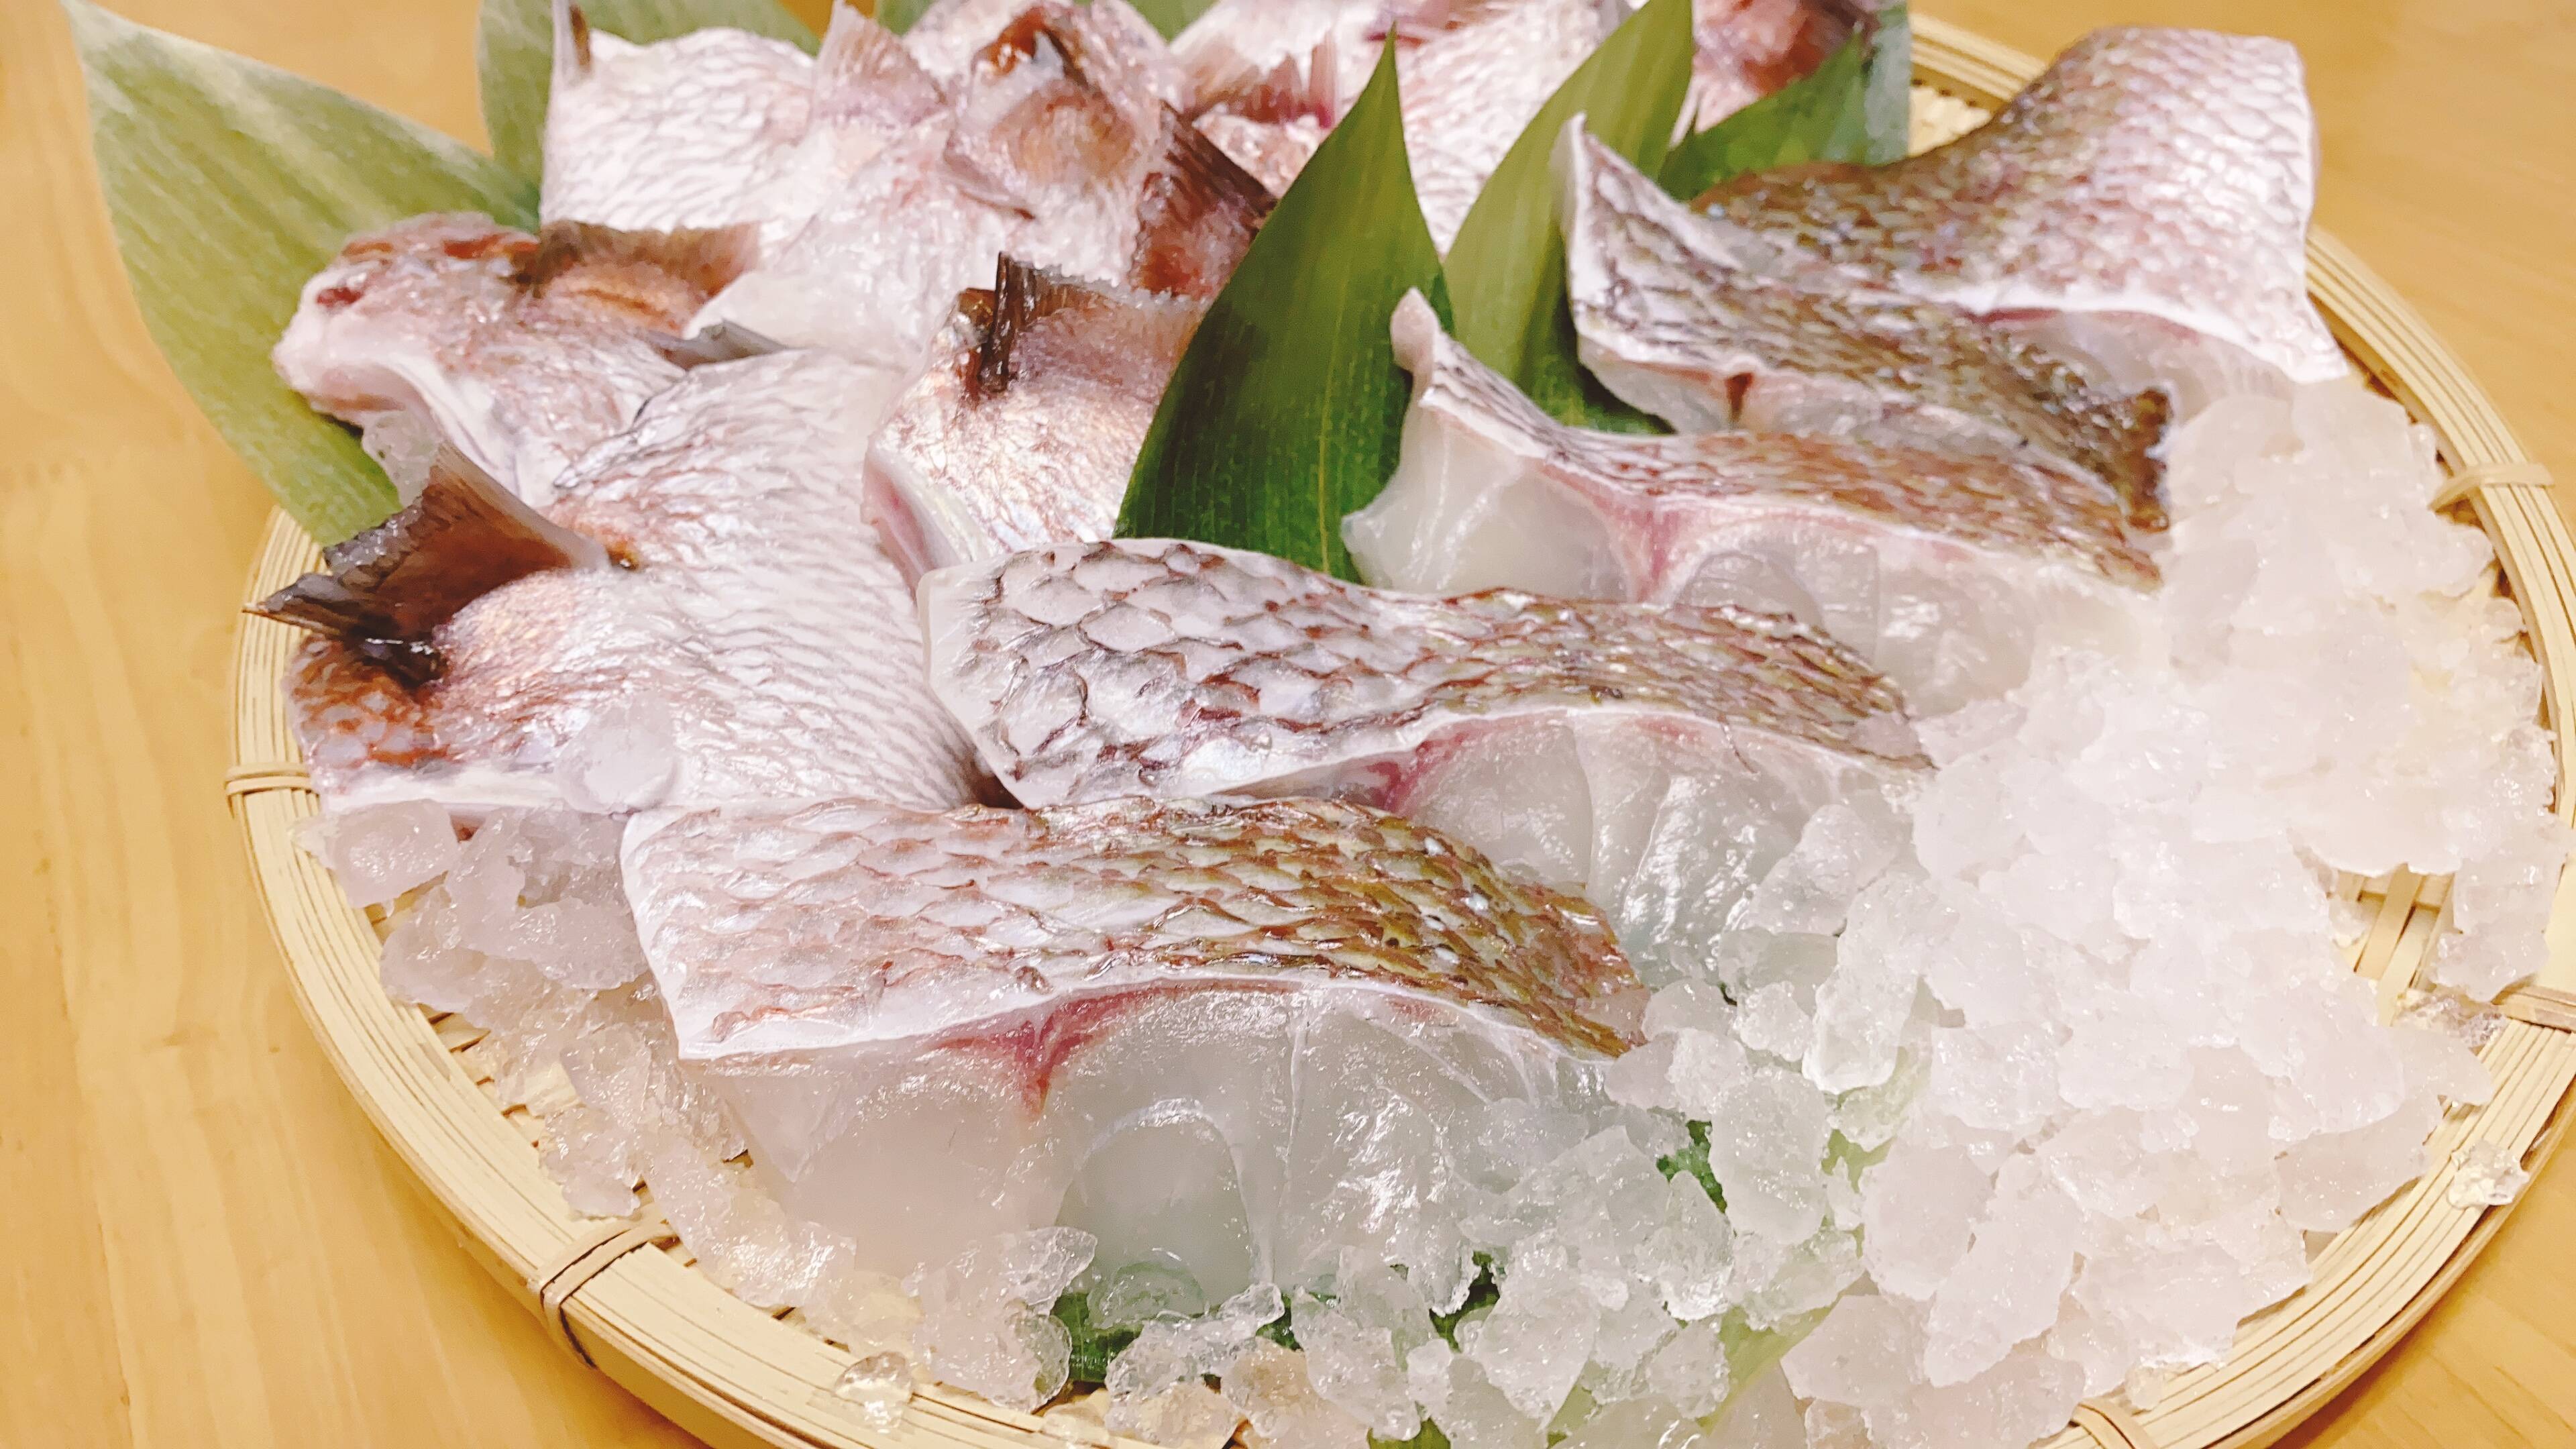 お得なセット 真鯛の切り身 5パック と 真鯛のカマ 5パック 養殖 急速凍結 熊本県産 食べチョク 農家 漁師の産直ネット通販 旬の食材を生産者直送